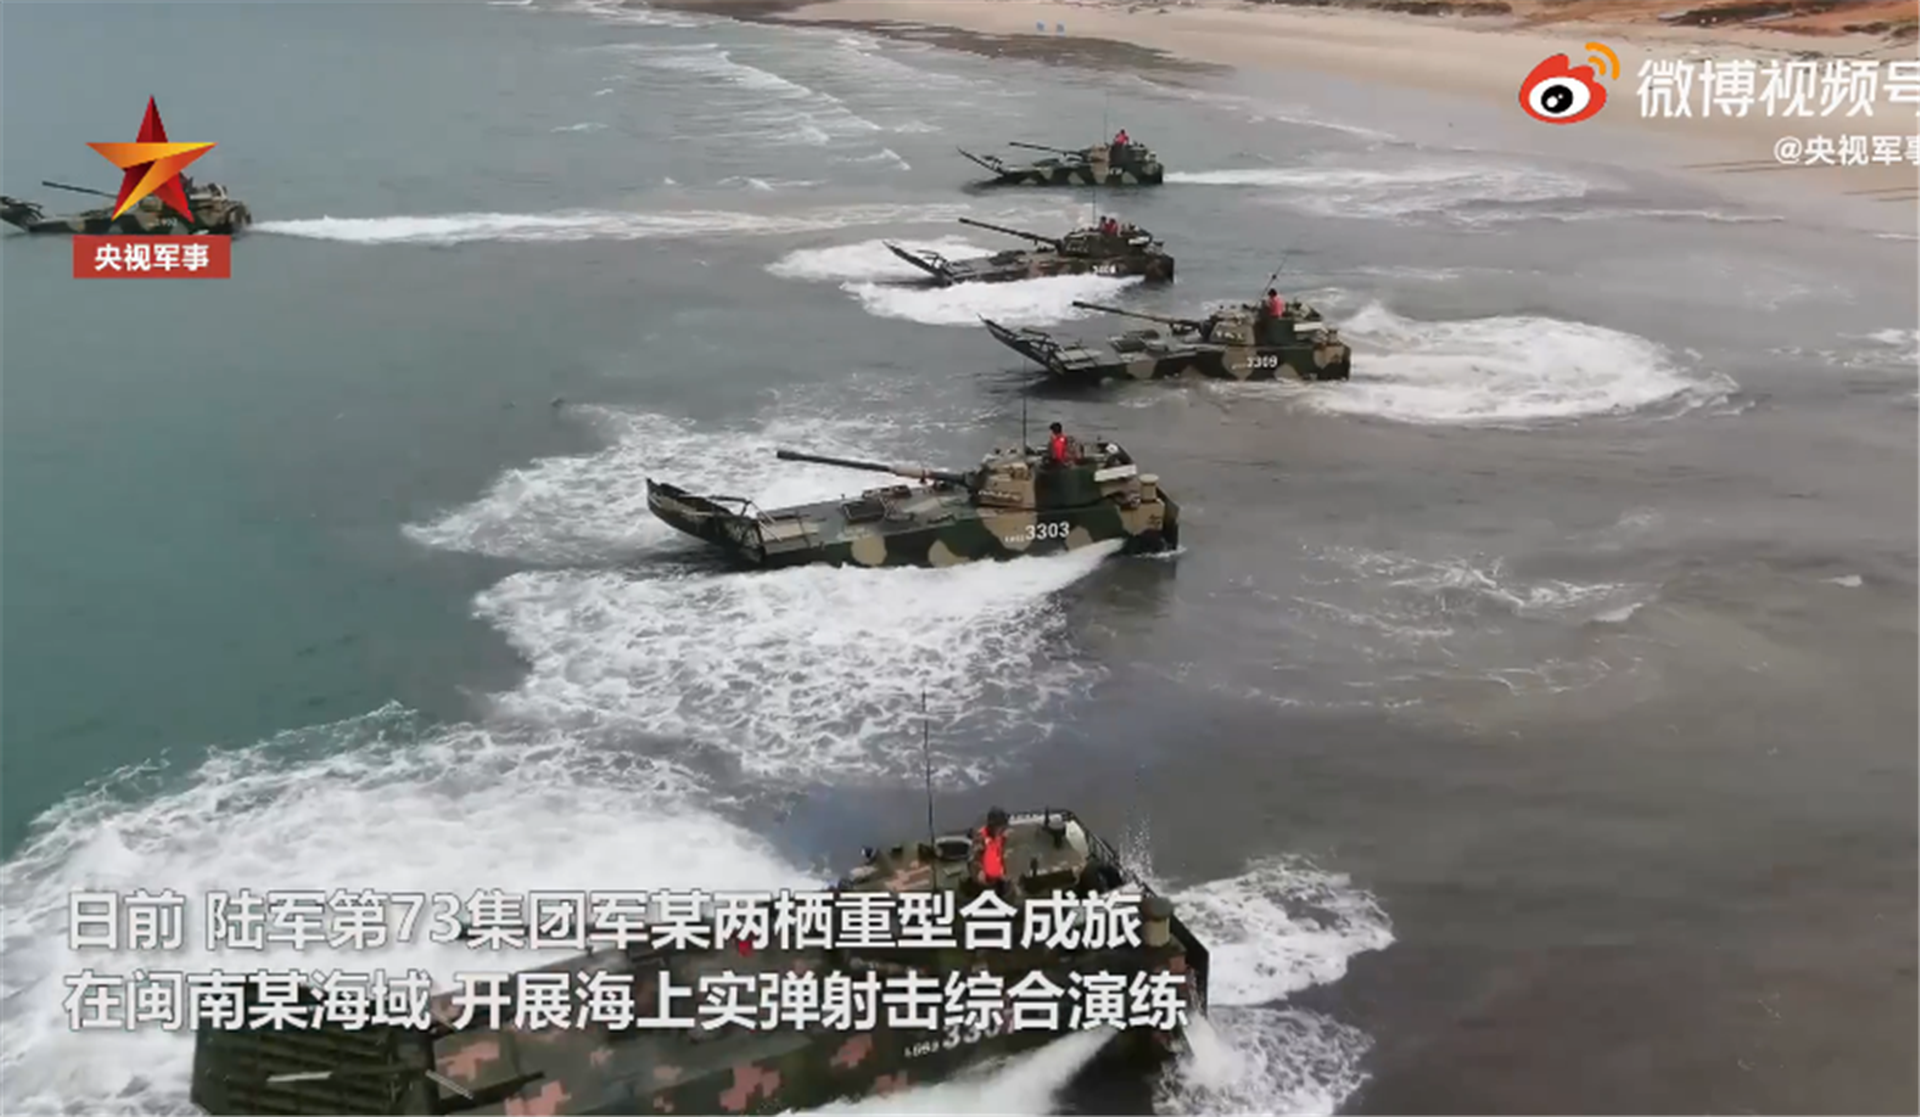 陆军第73集团军某两栖重型合成旅组织海上实弹战斗射击综合演练。（中国央视截图）